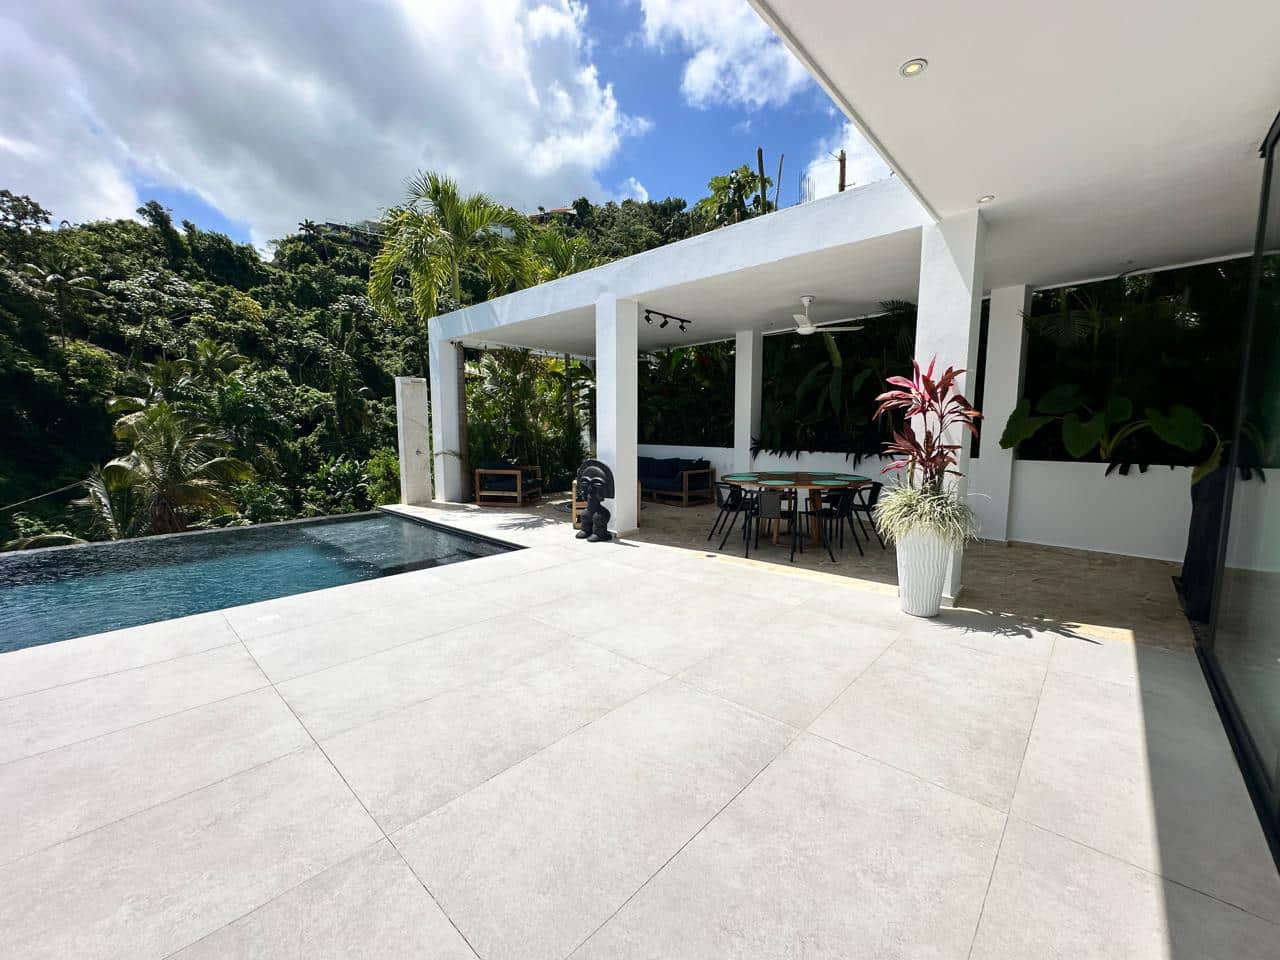 Splendid 4-bedroom villa with ocean vista - Las Terrenas Real Estate - Ocean Edge Dominican Republic (4)